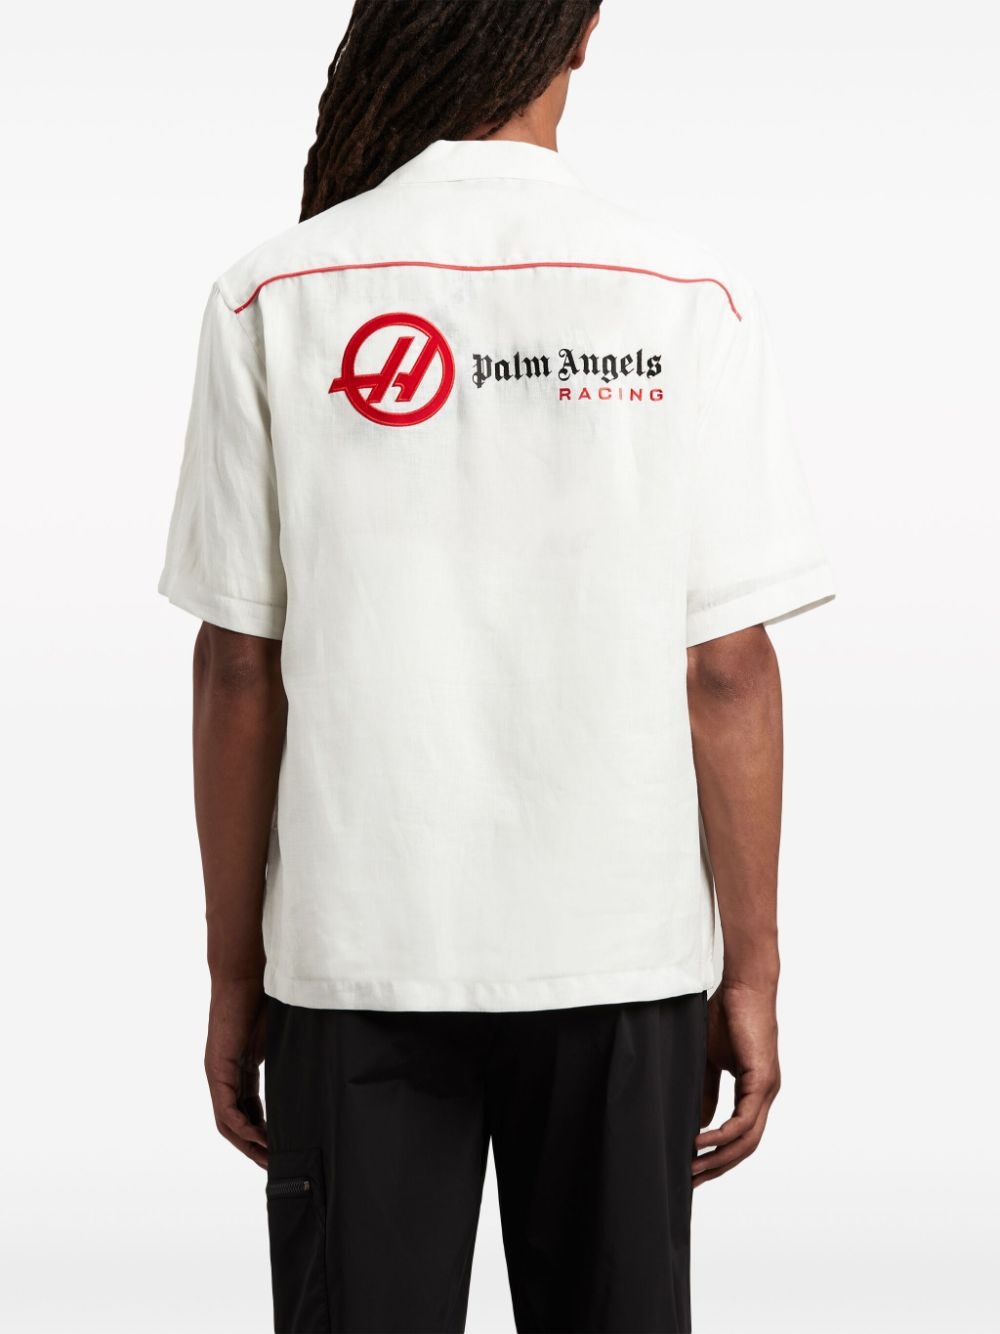 x Haas F1 Team linen bowling shirt - 5